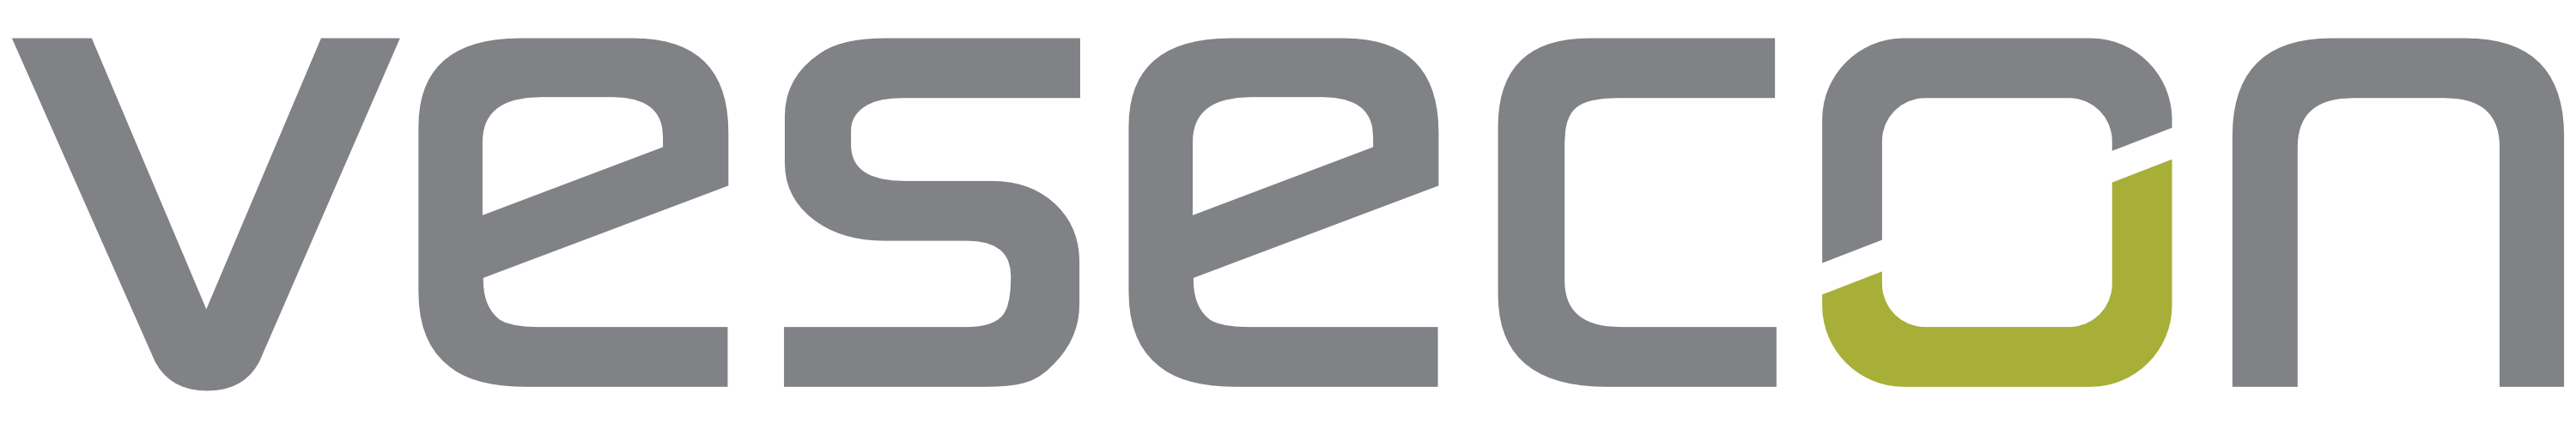 logo_vesecon_grey